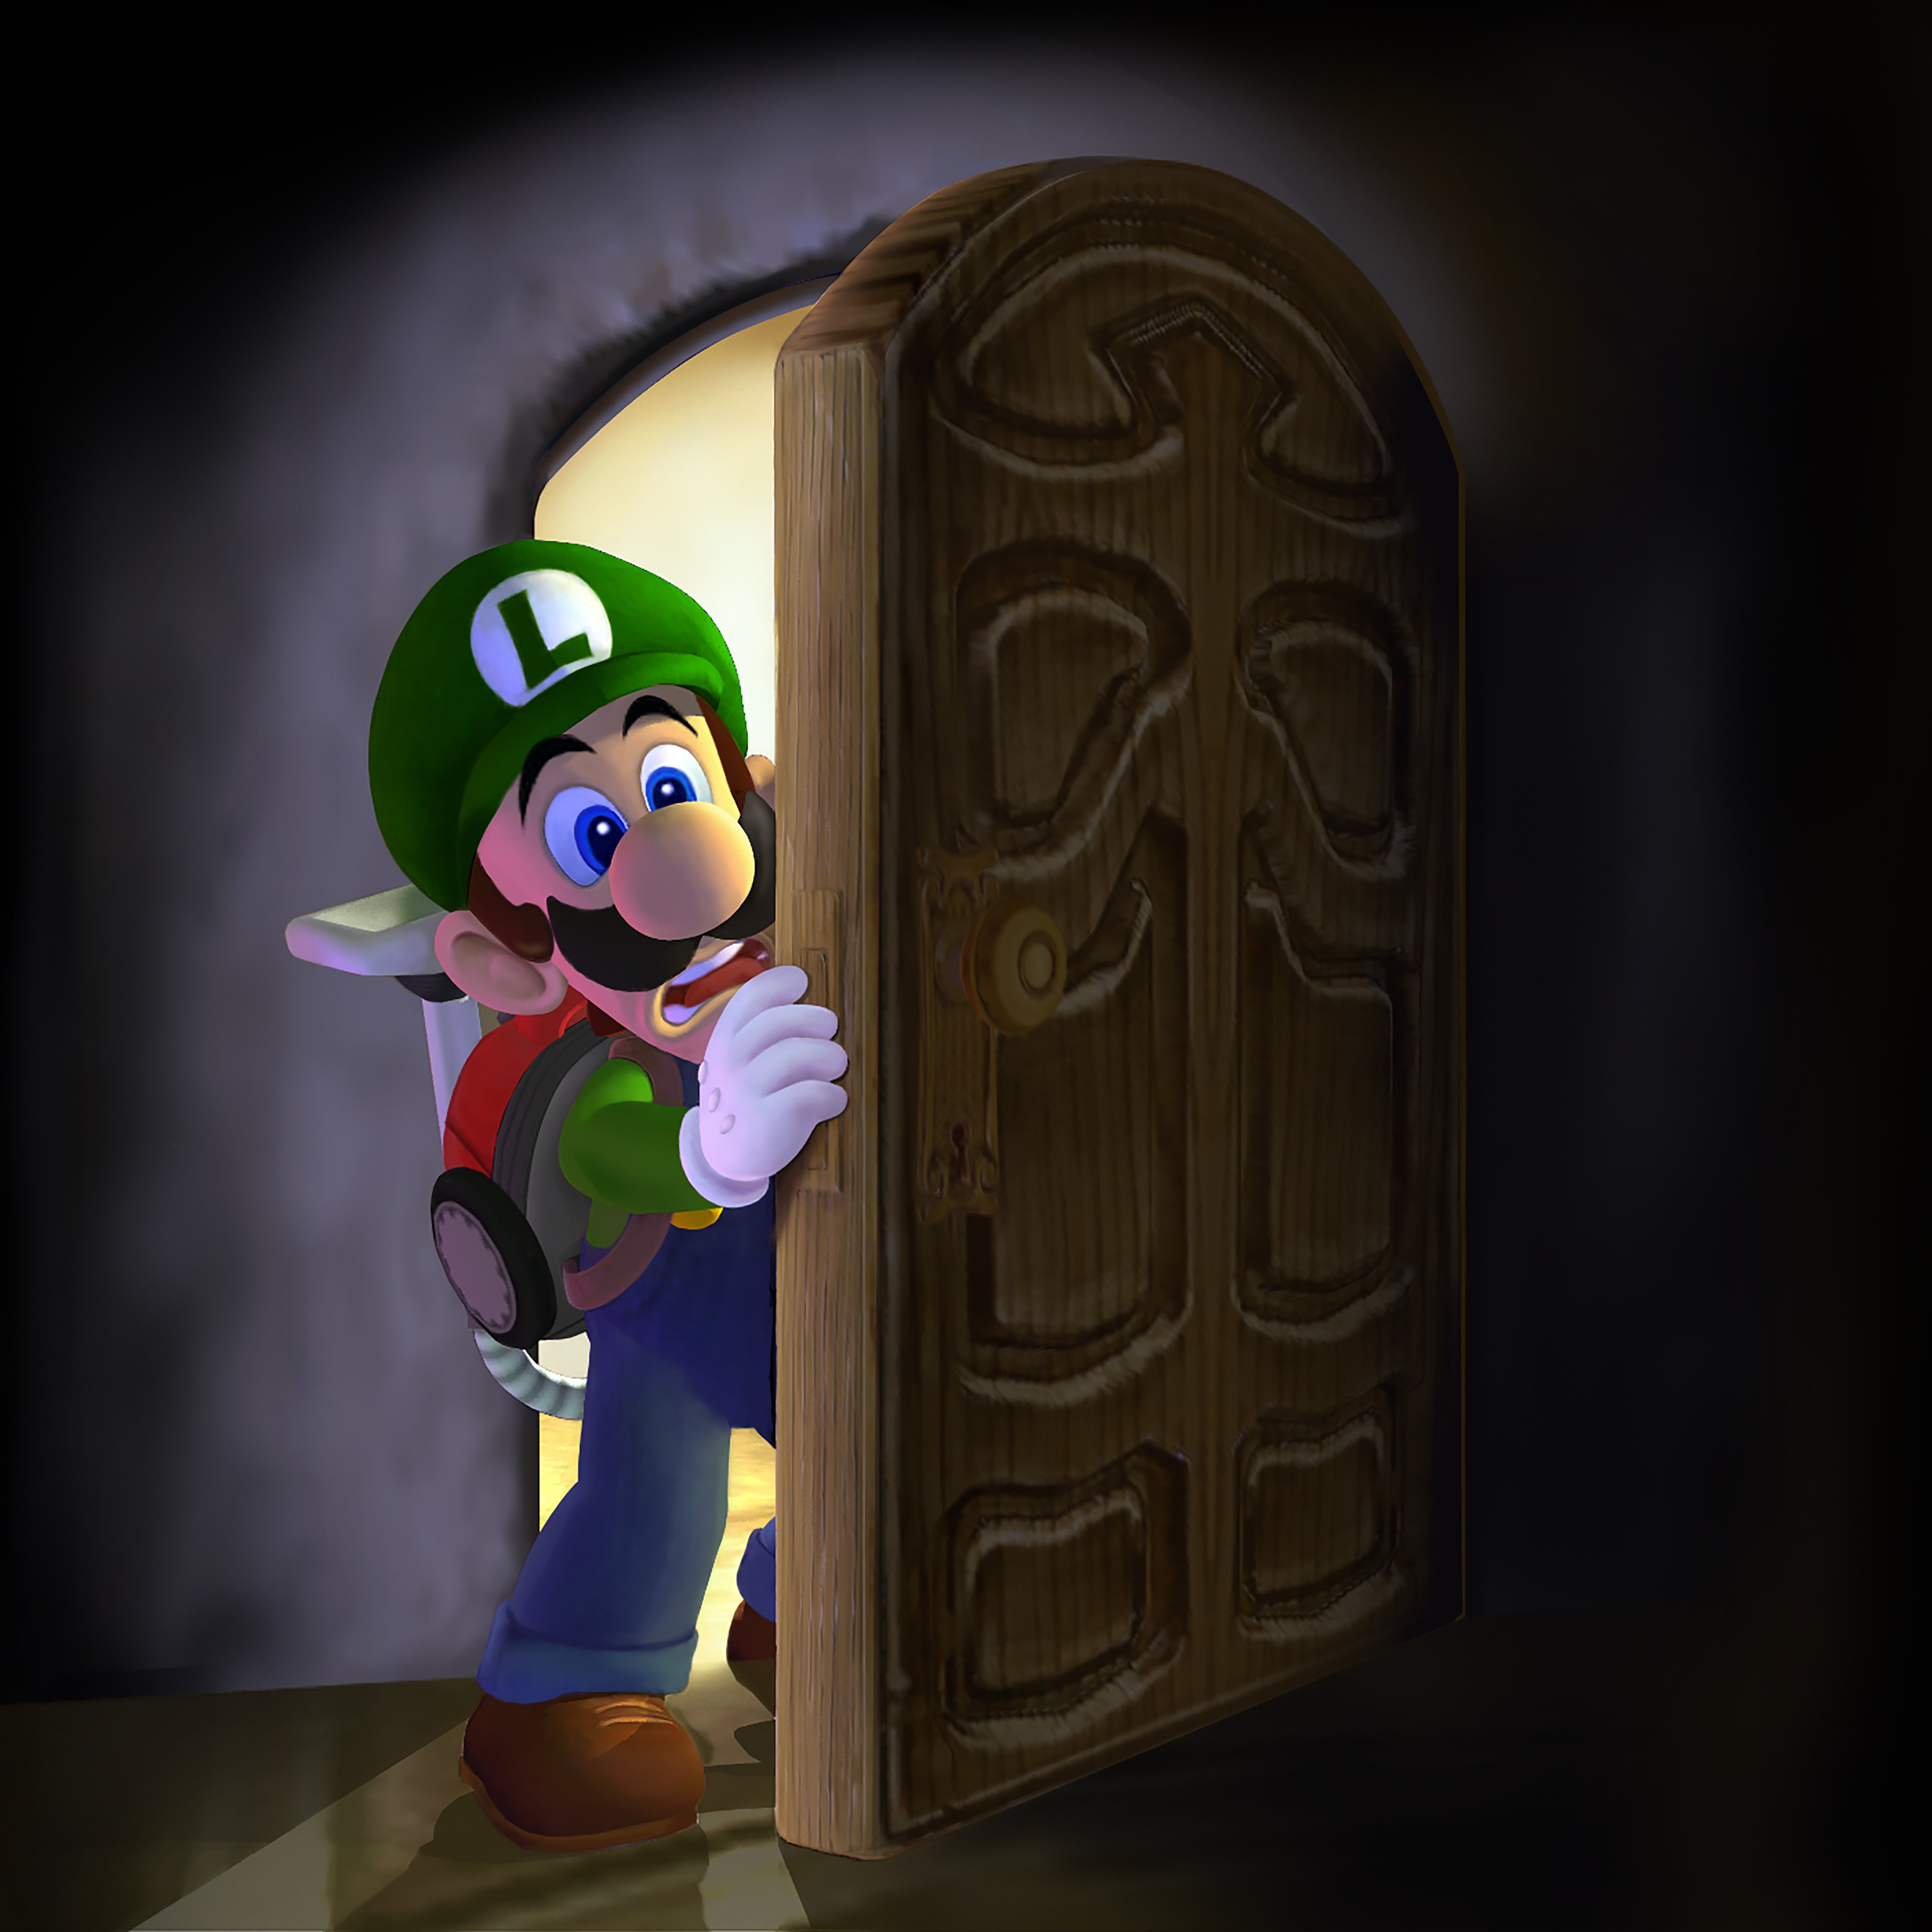 Nintendo luigi mansion. Луиджи Мансион 1. Луиджи из Luigi s Mansion 3. Luigis Manision 1 Luigi. Luigi's Mansion [3ds].